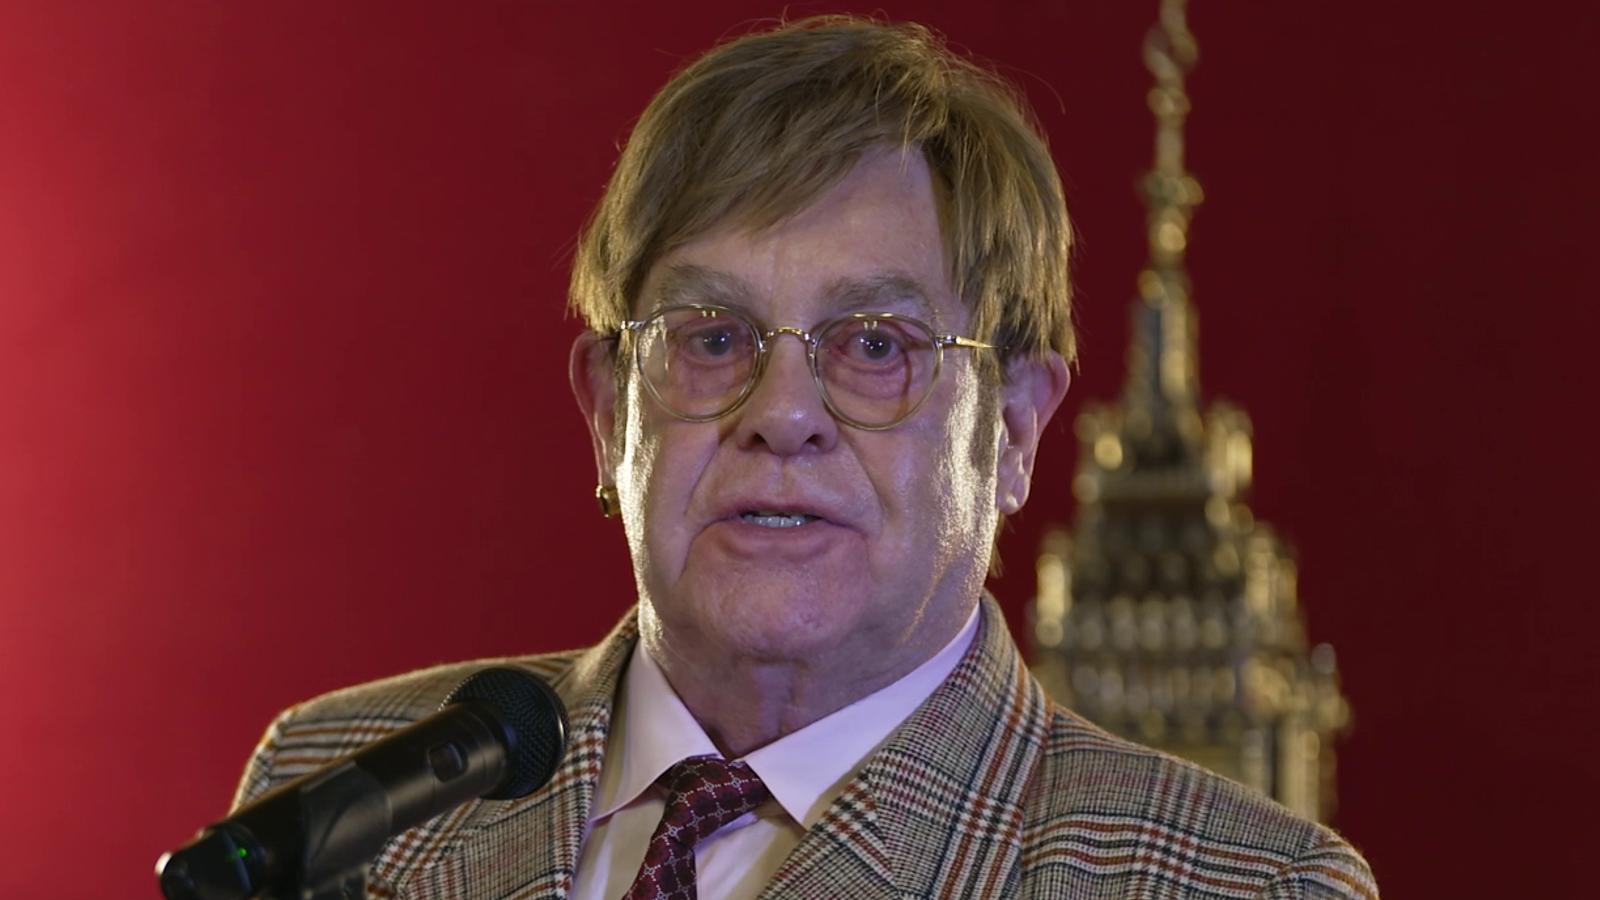 Sir Elton John do parlamentarzystów: Zwycięzca następnych wyborów może pomóc w wyeliminowaniu AIDS do 2030 roku |  Wiadomości polityczne